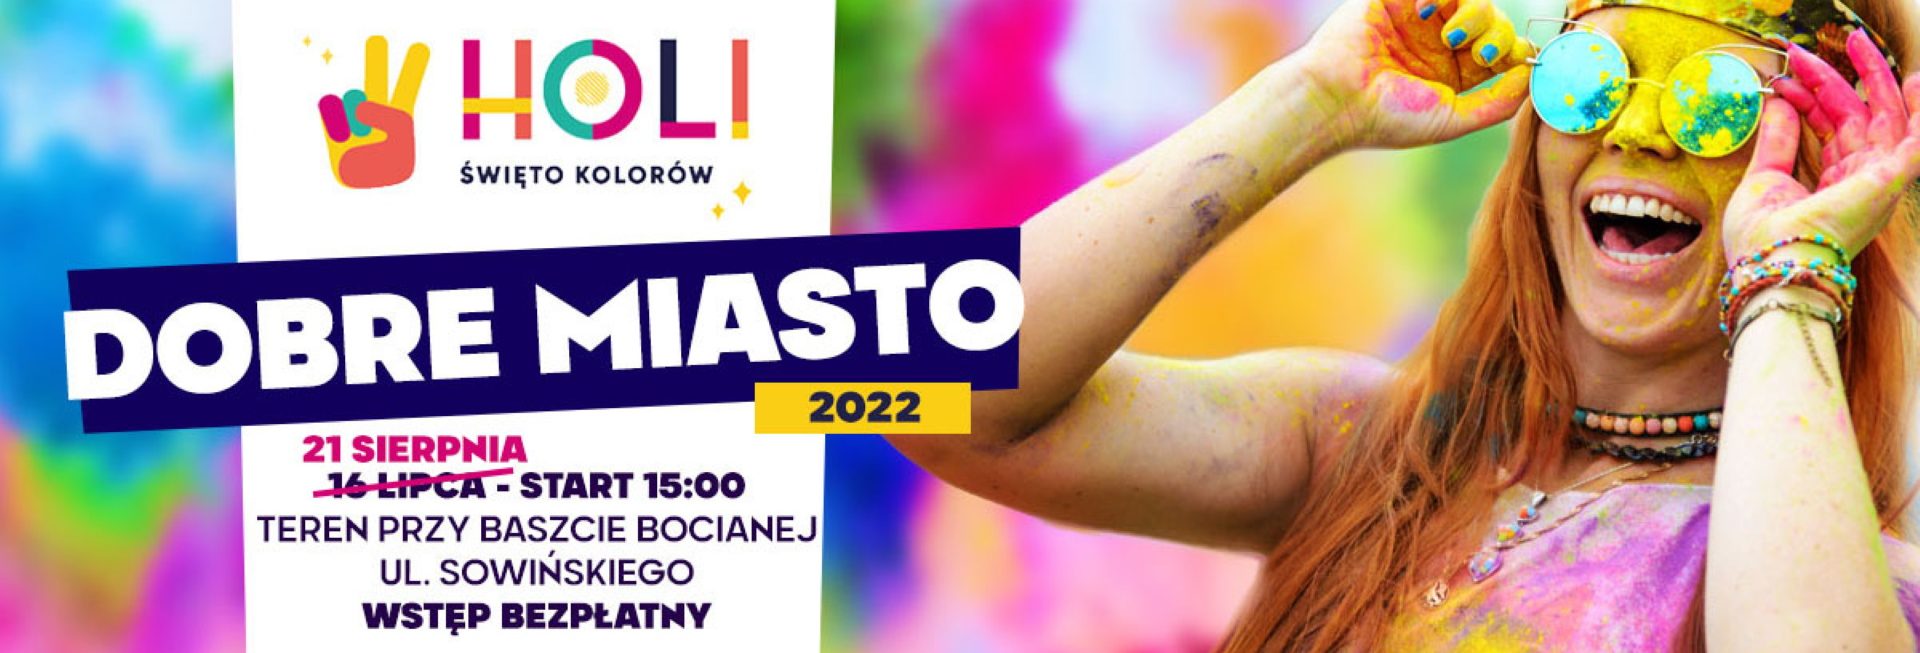 Plakat zapraszający do Dobrego Miasta na Holi Święto Kolorów Dobre Miasto 2022.